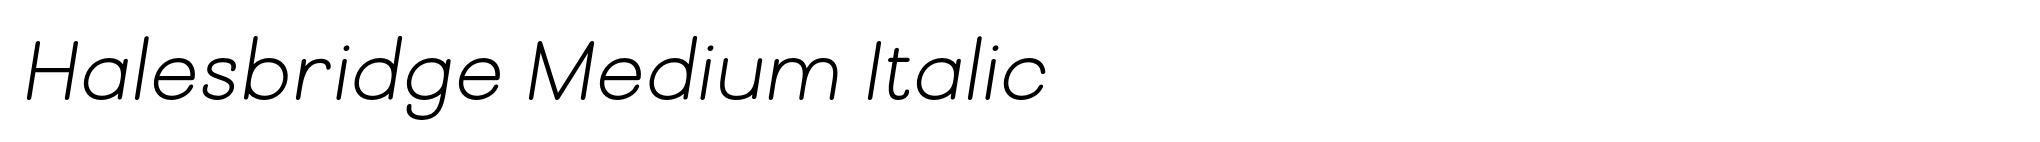 Halesbridge Medium Italic image